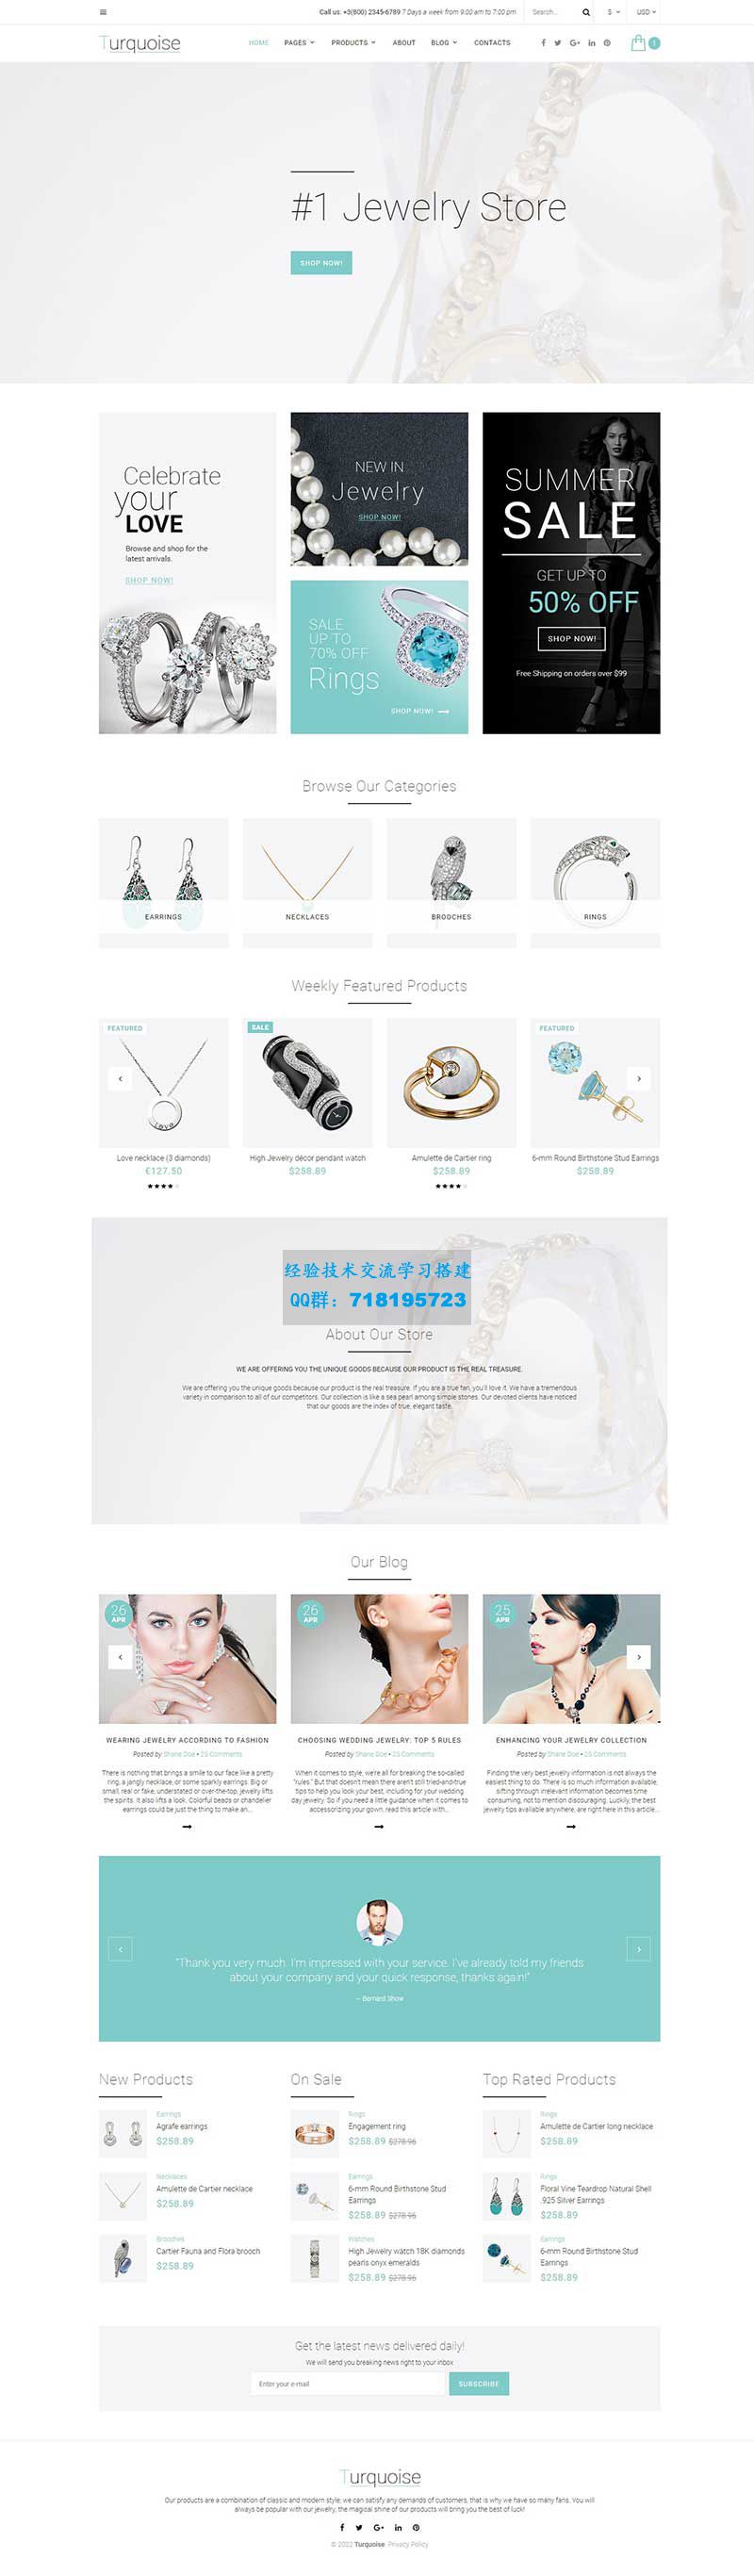     白色简洁精美的html珠宝商城整站网页模板
